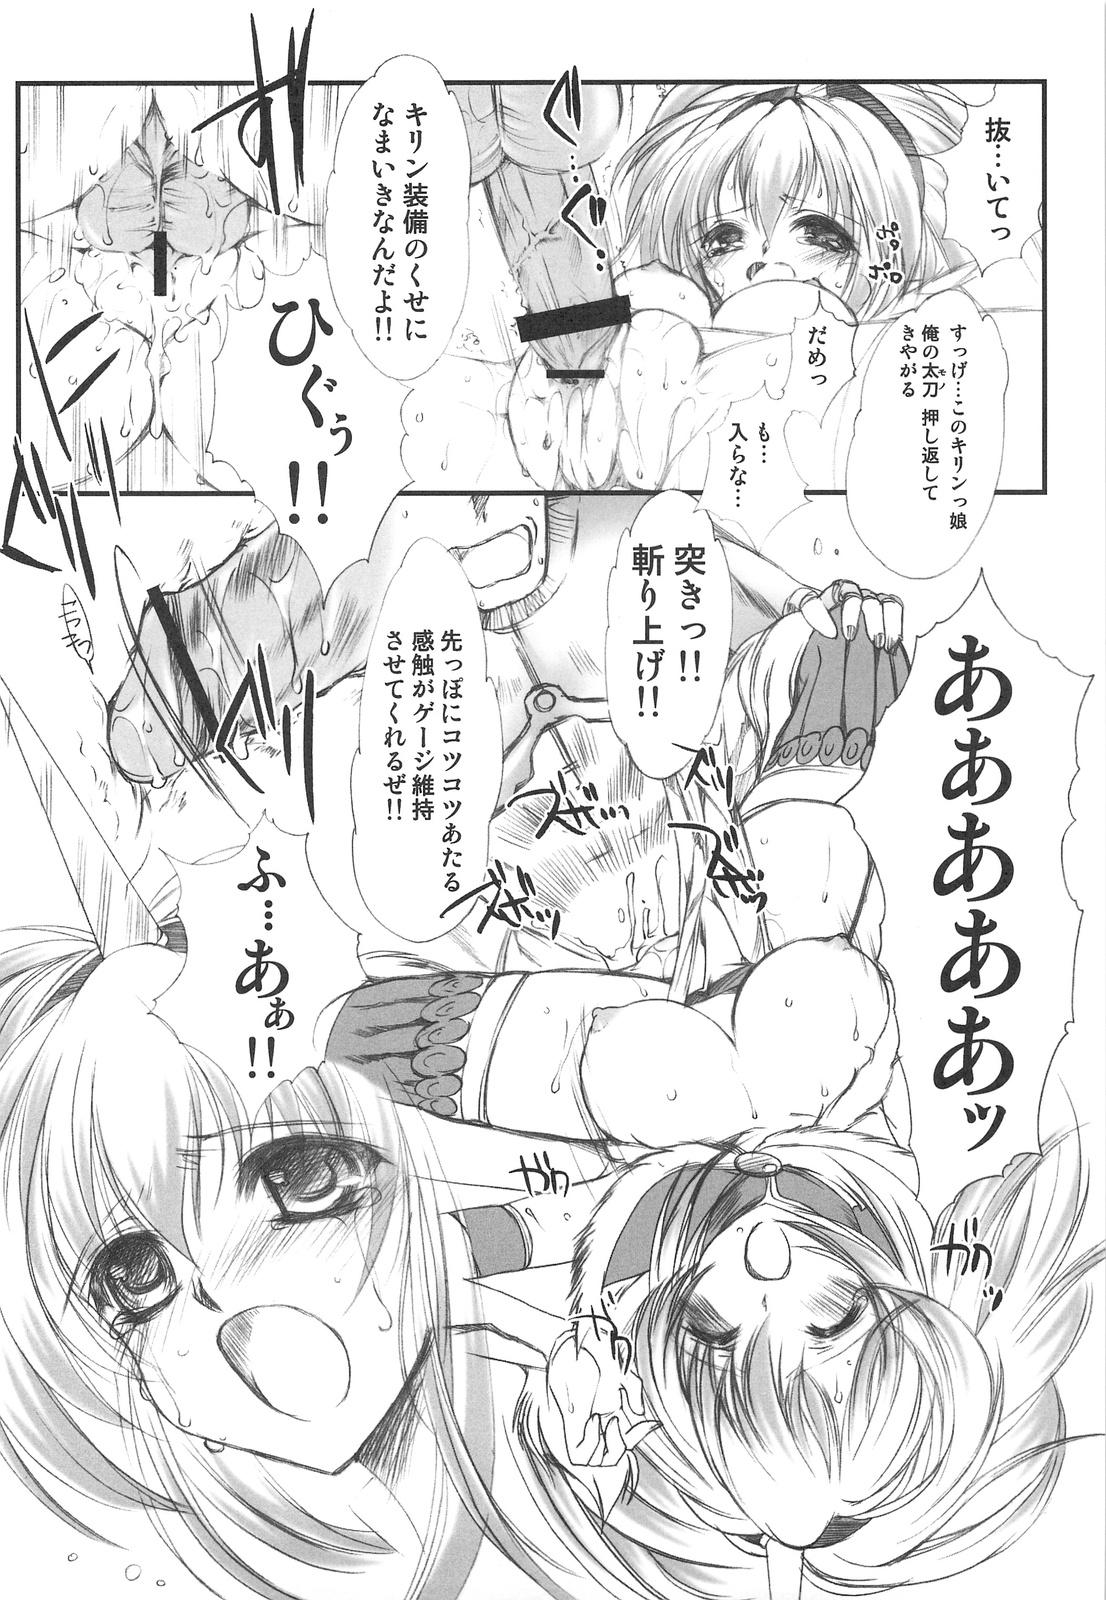  Hokaku no Tatsujin - Monster hunter Sucking Dicks - Page 11